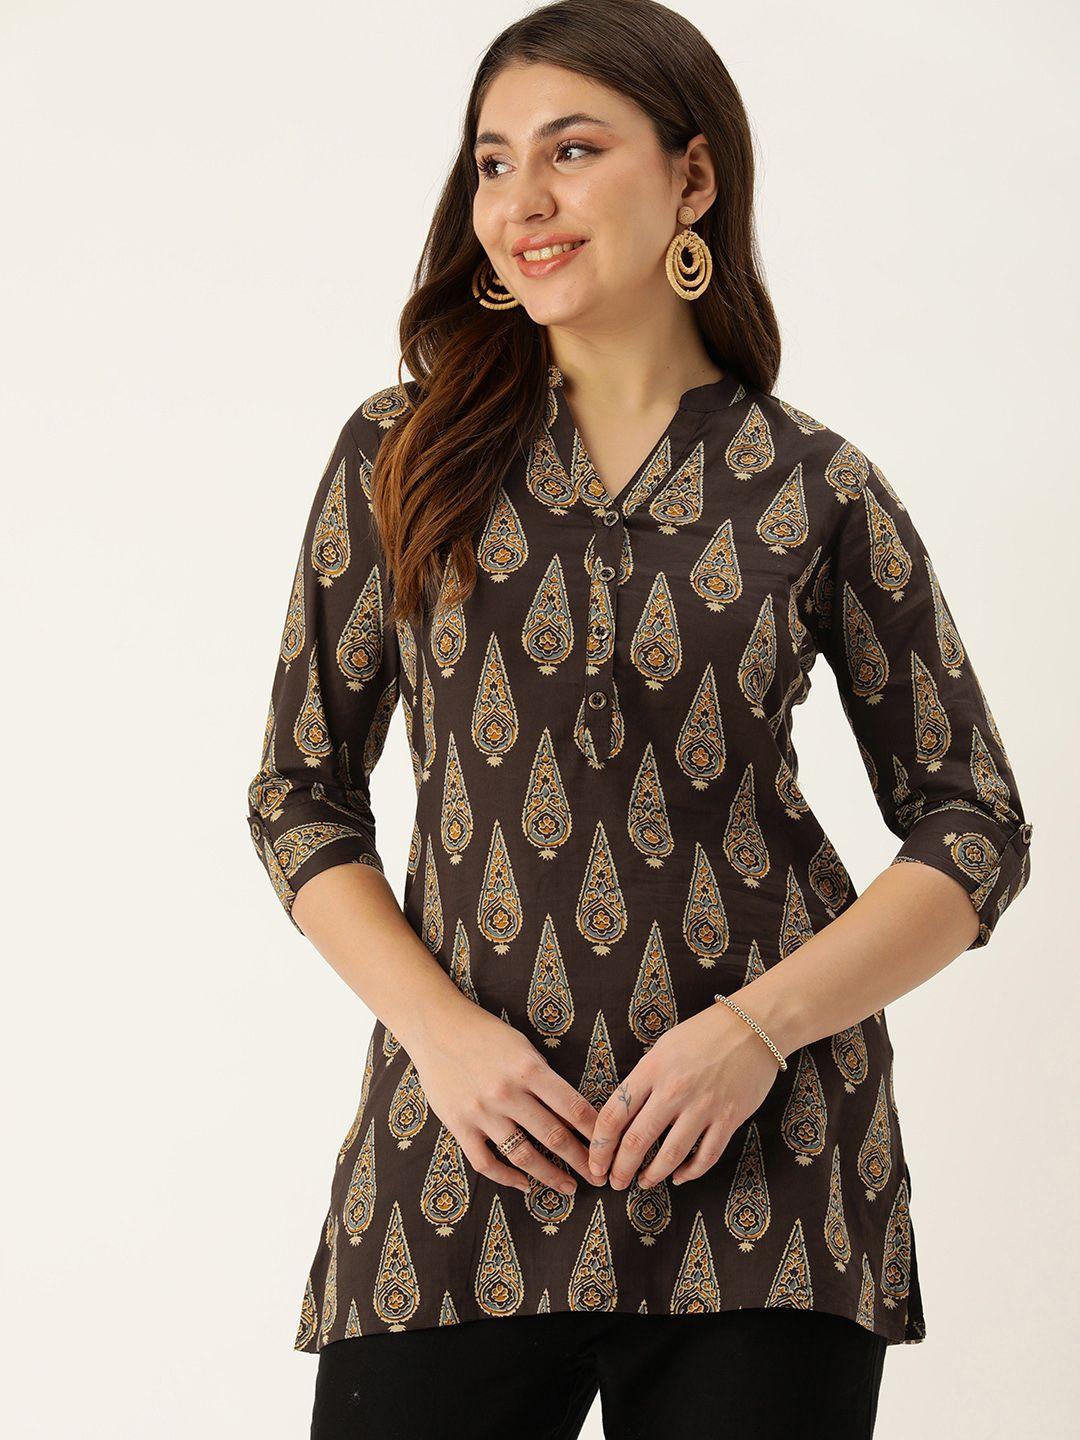 amukti mandarin collar printed ethnic tunic